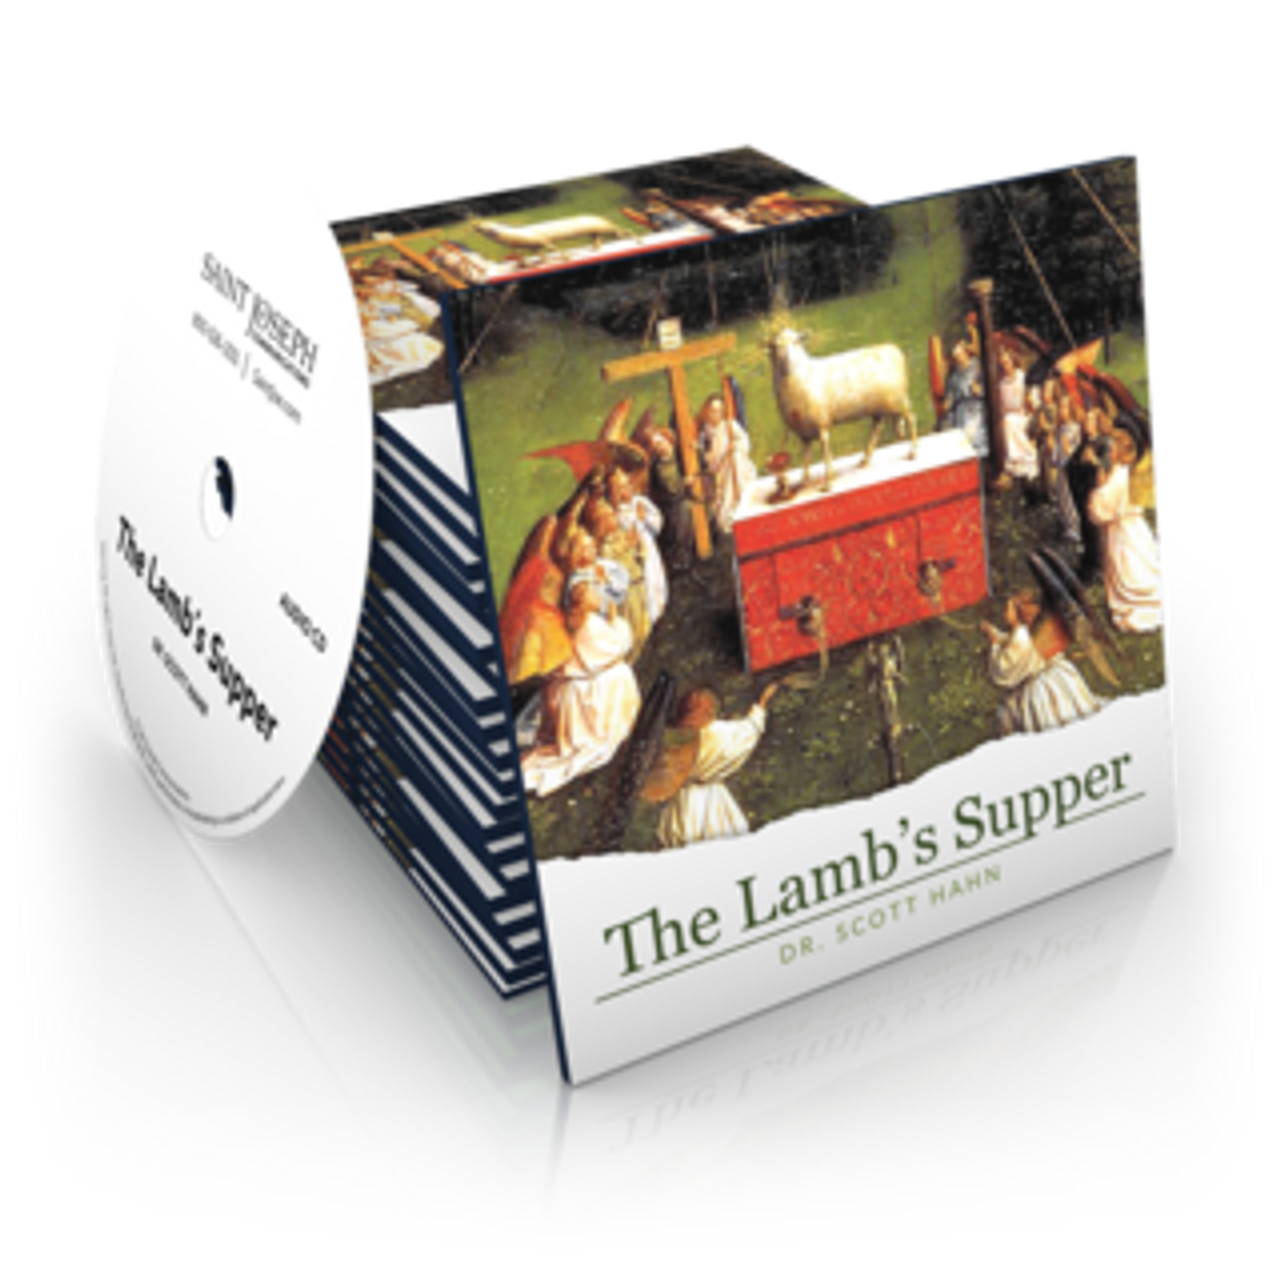 The Lamb's Supper